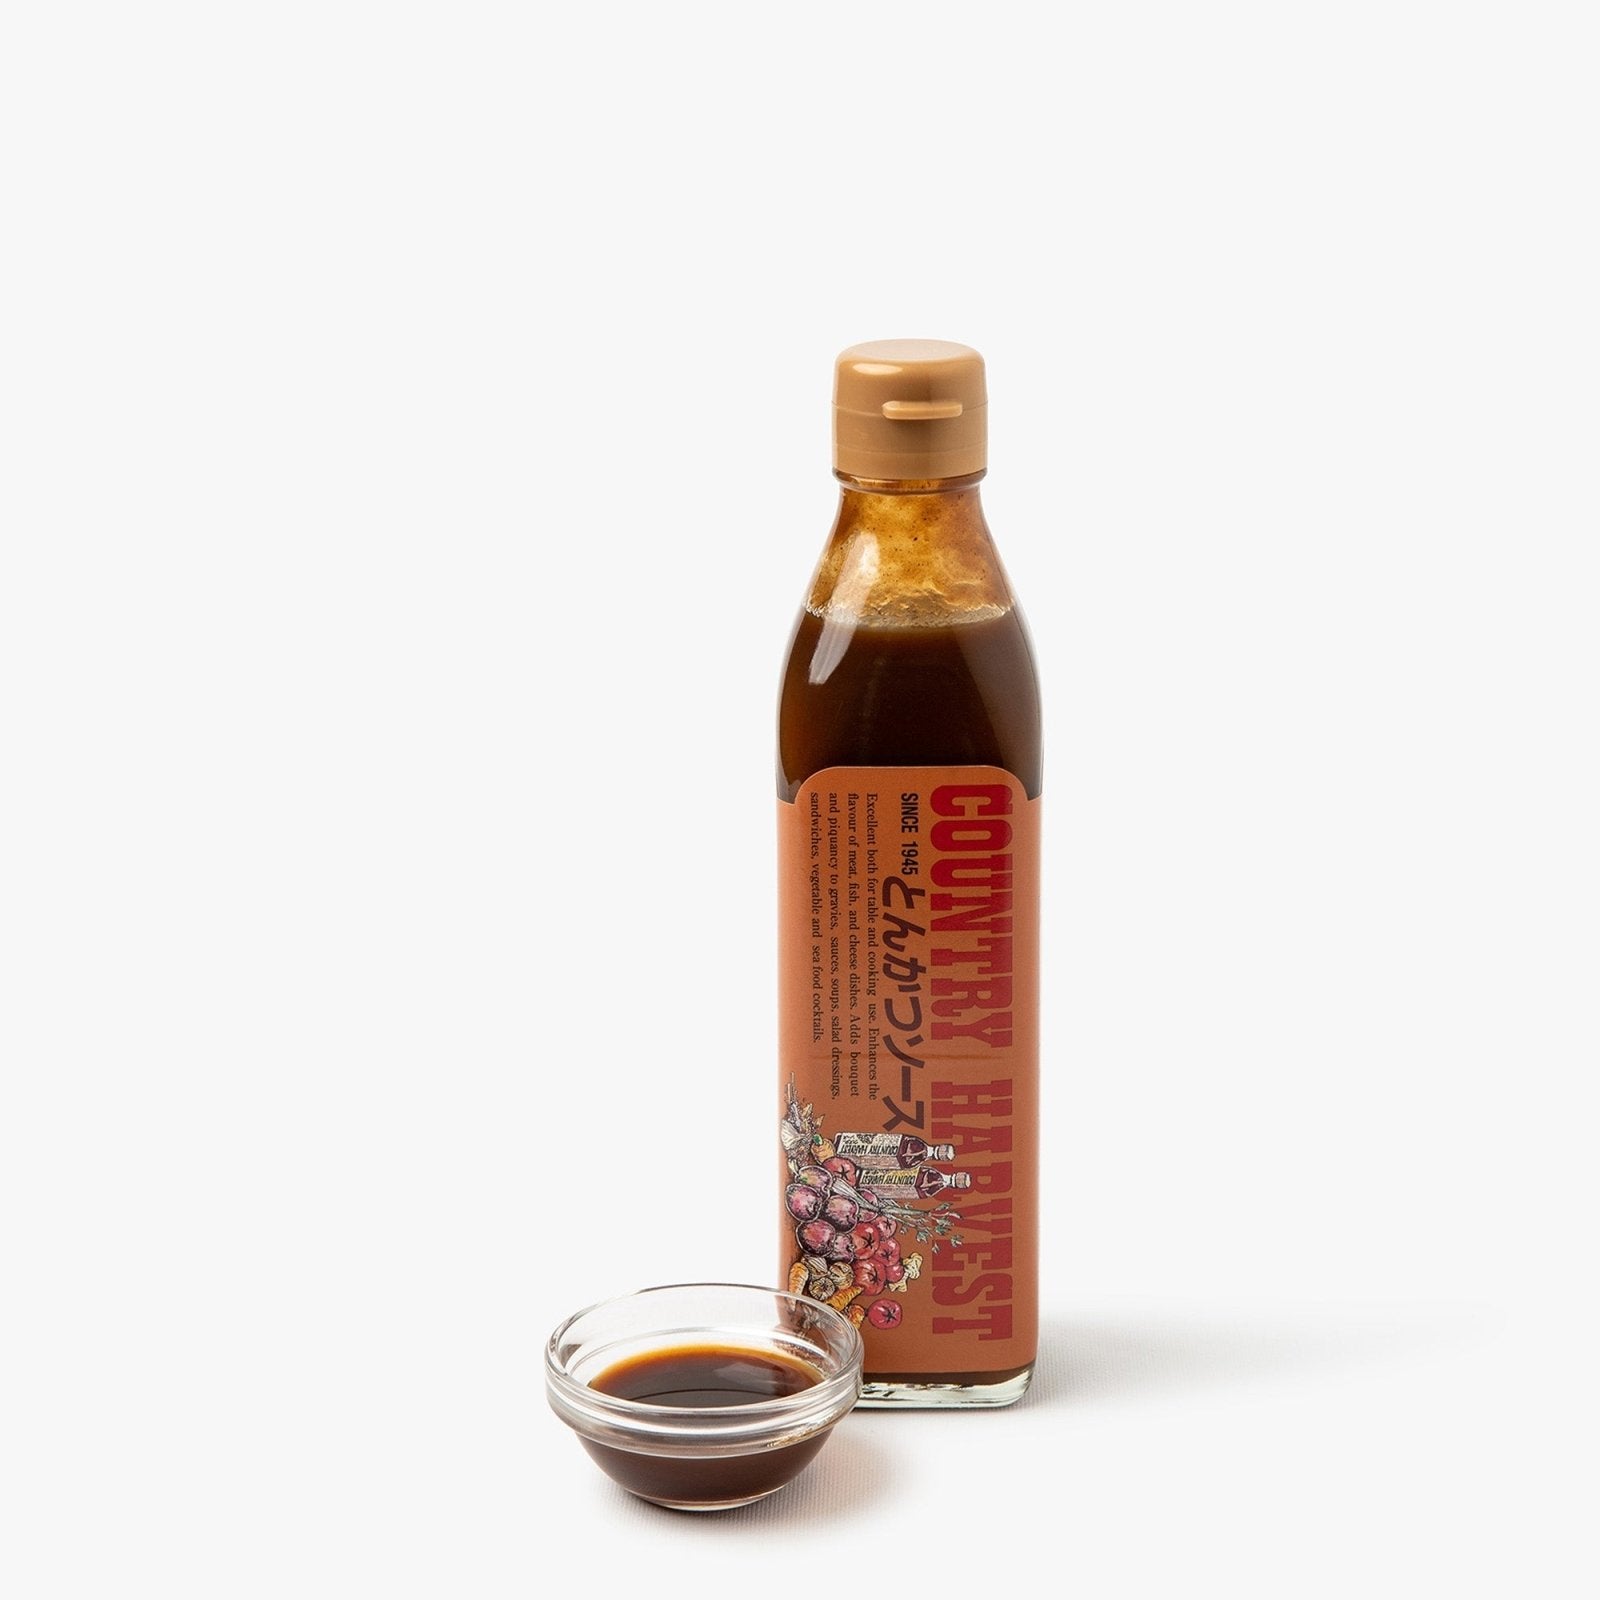 Archives des Sauces Asiatique - SOFRAMA